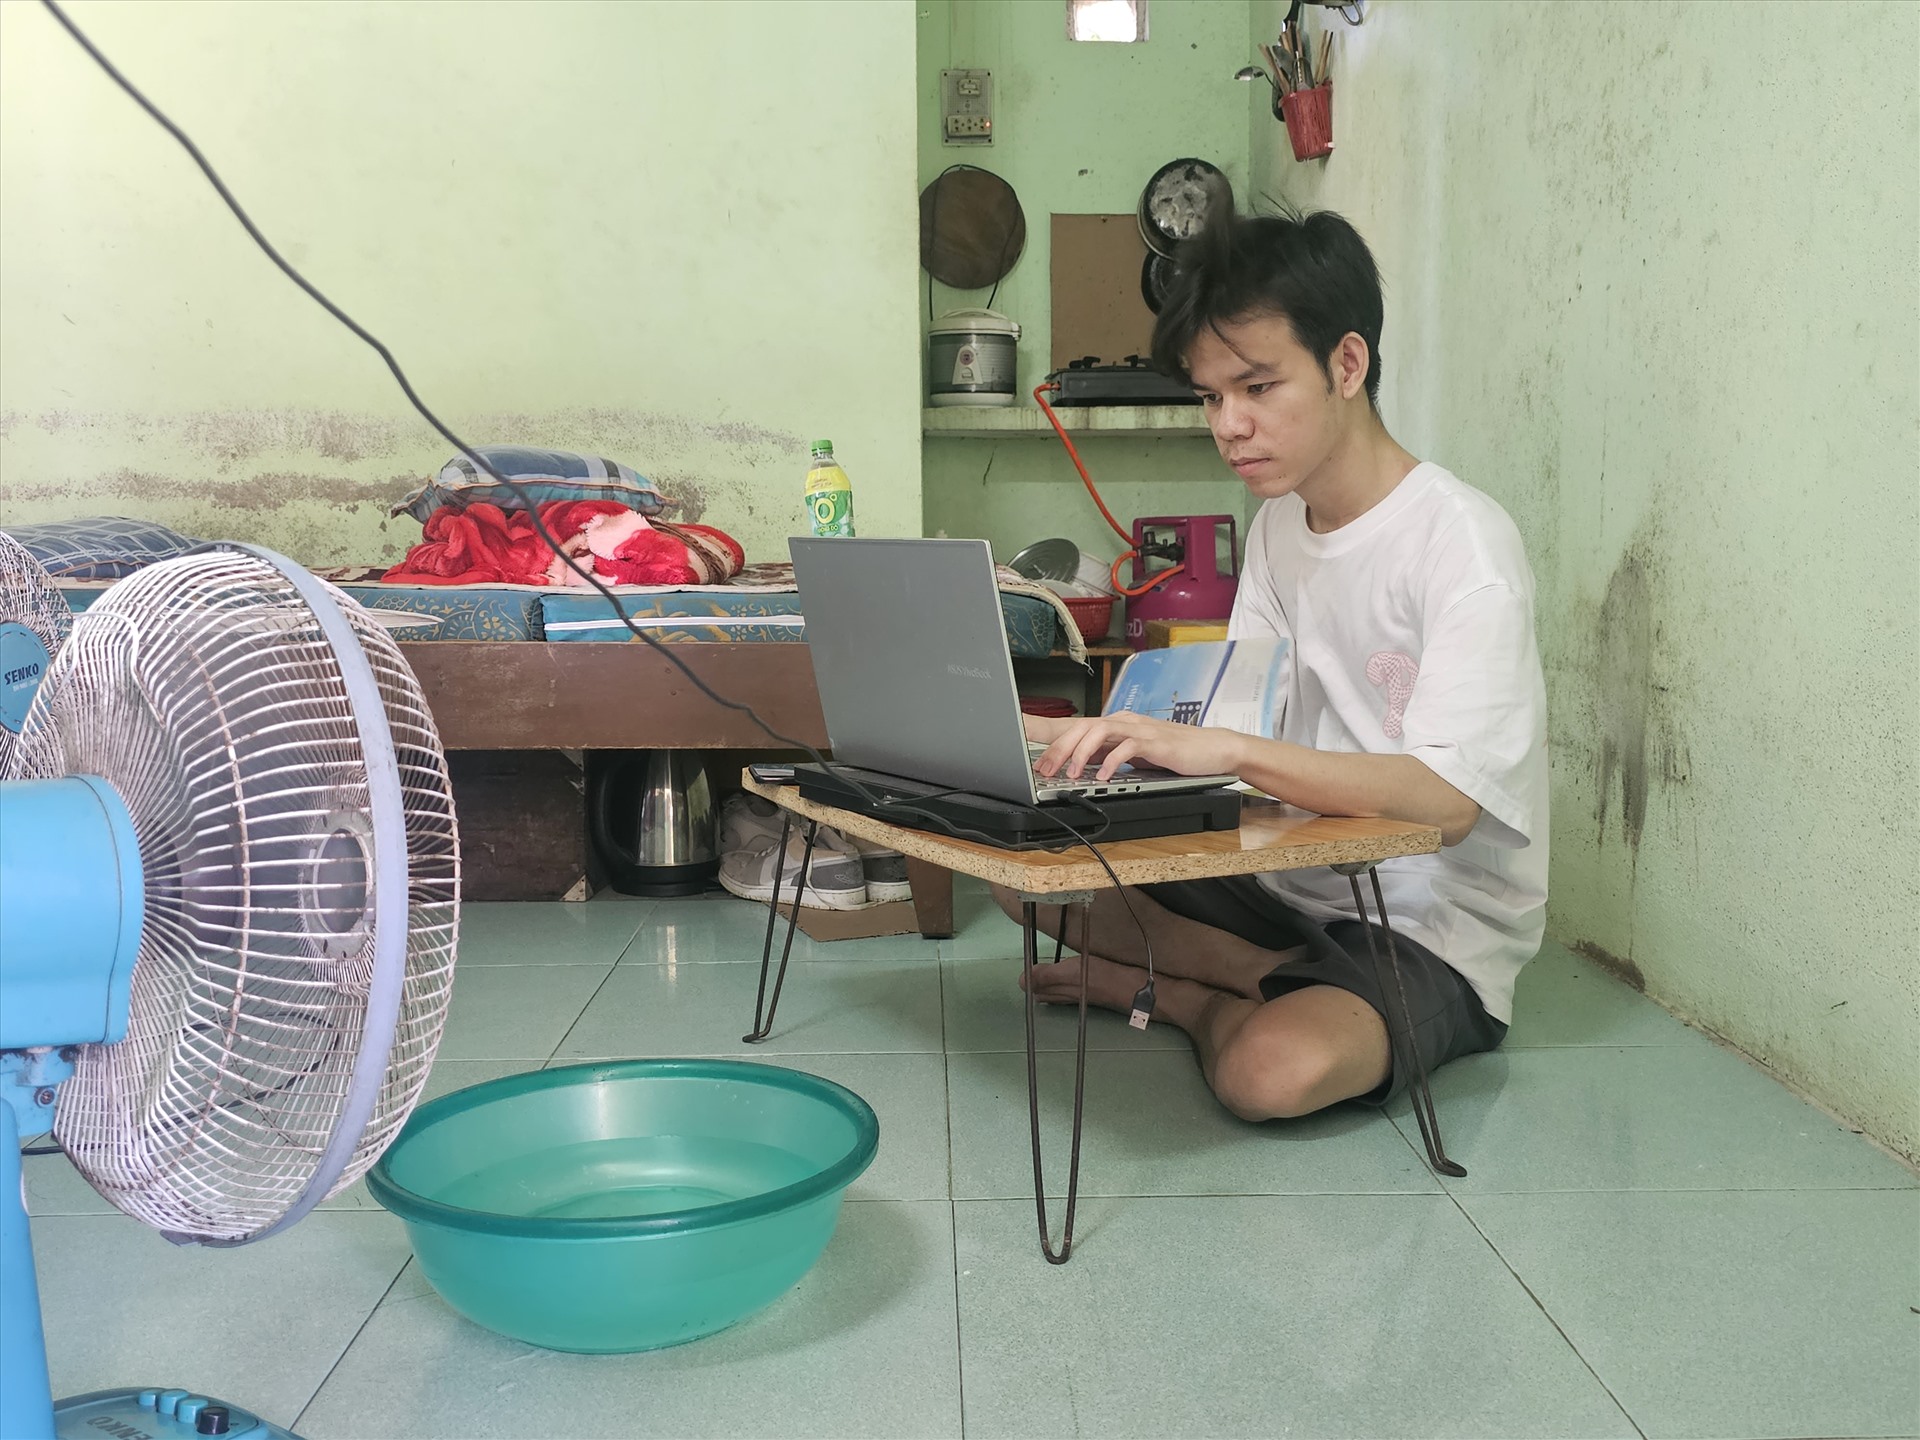 Bạn Đức Anh – Sinh viên năm 3 trường Đại học Luật, Đại học Huế sống tại dãy trọ trên đường Nguyễn Hữu Cảnh, trong một phòng trọ không gian chật hẹp, mái tôn nên rất nóng, đỉnh điểm là giữa trưa. 